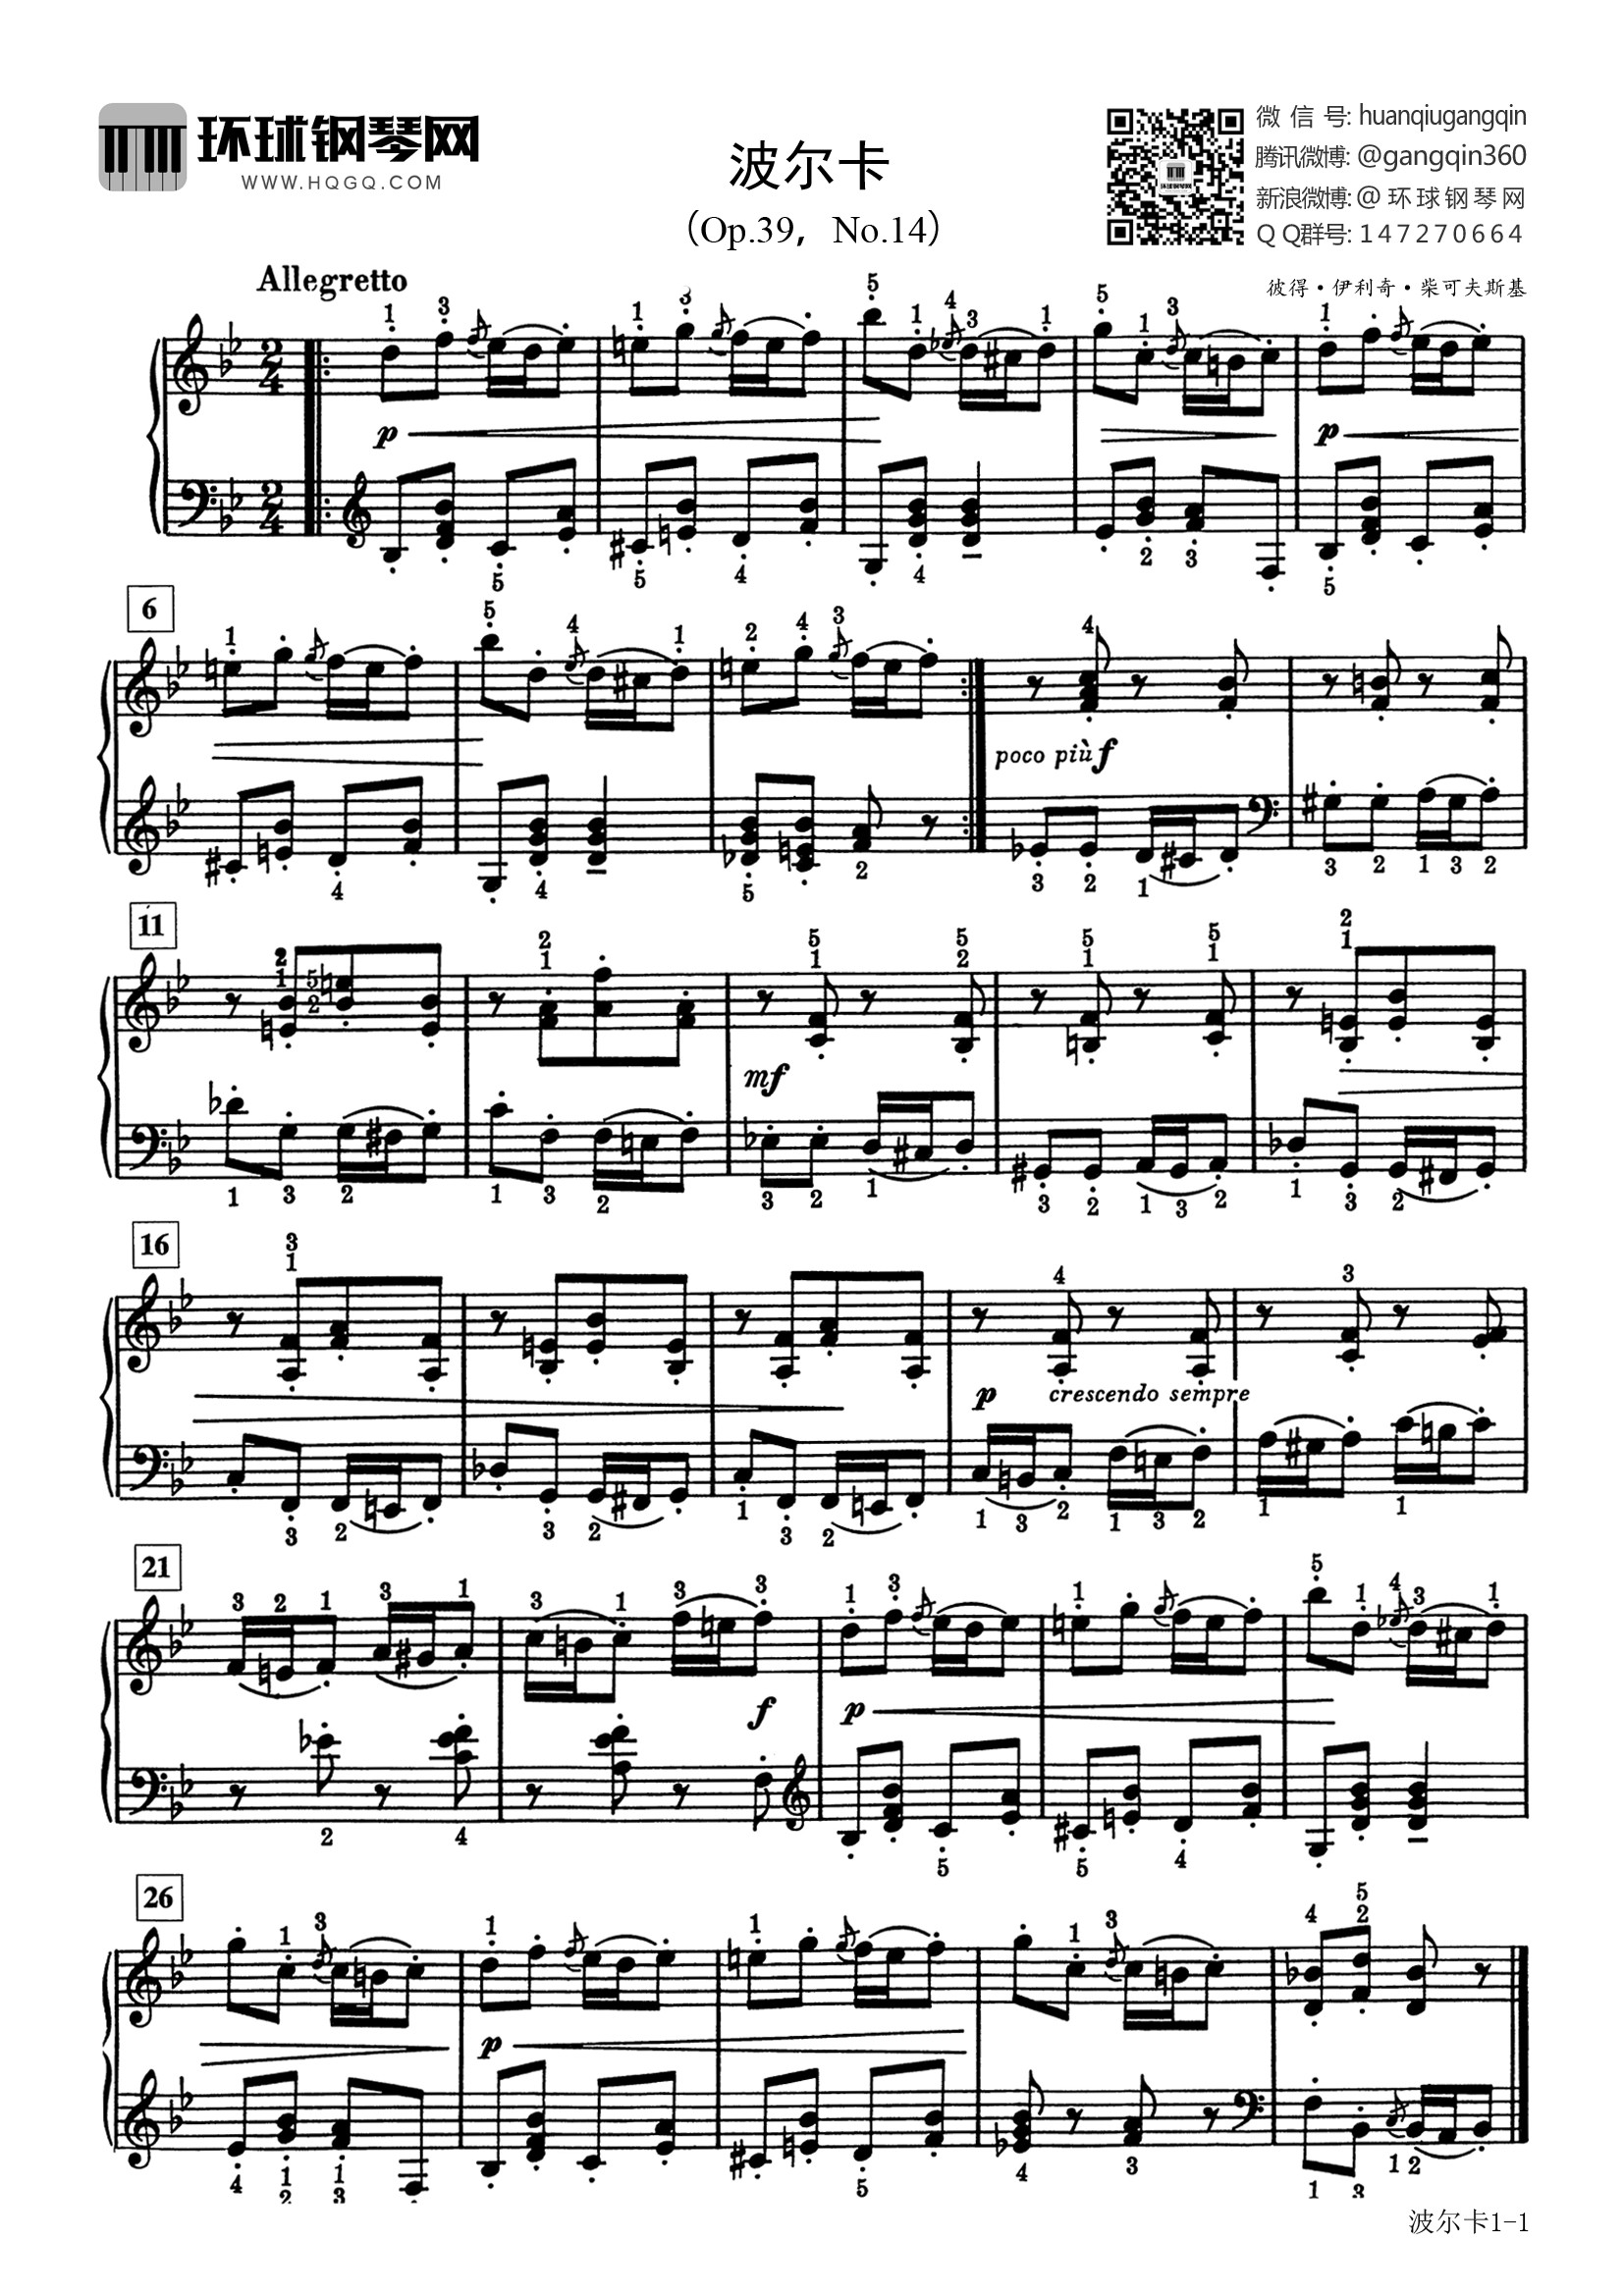 波尔卡(选自《巴斯蒂安世界钢琴名曲集2》)